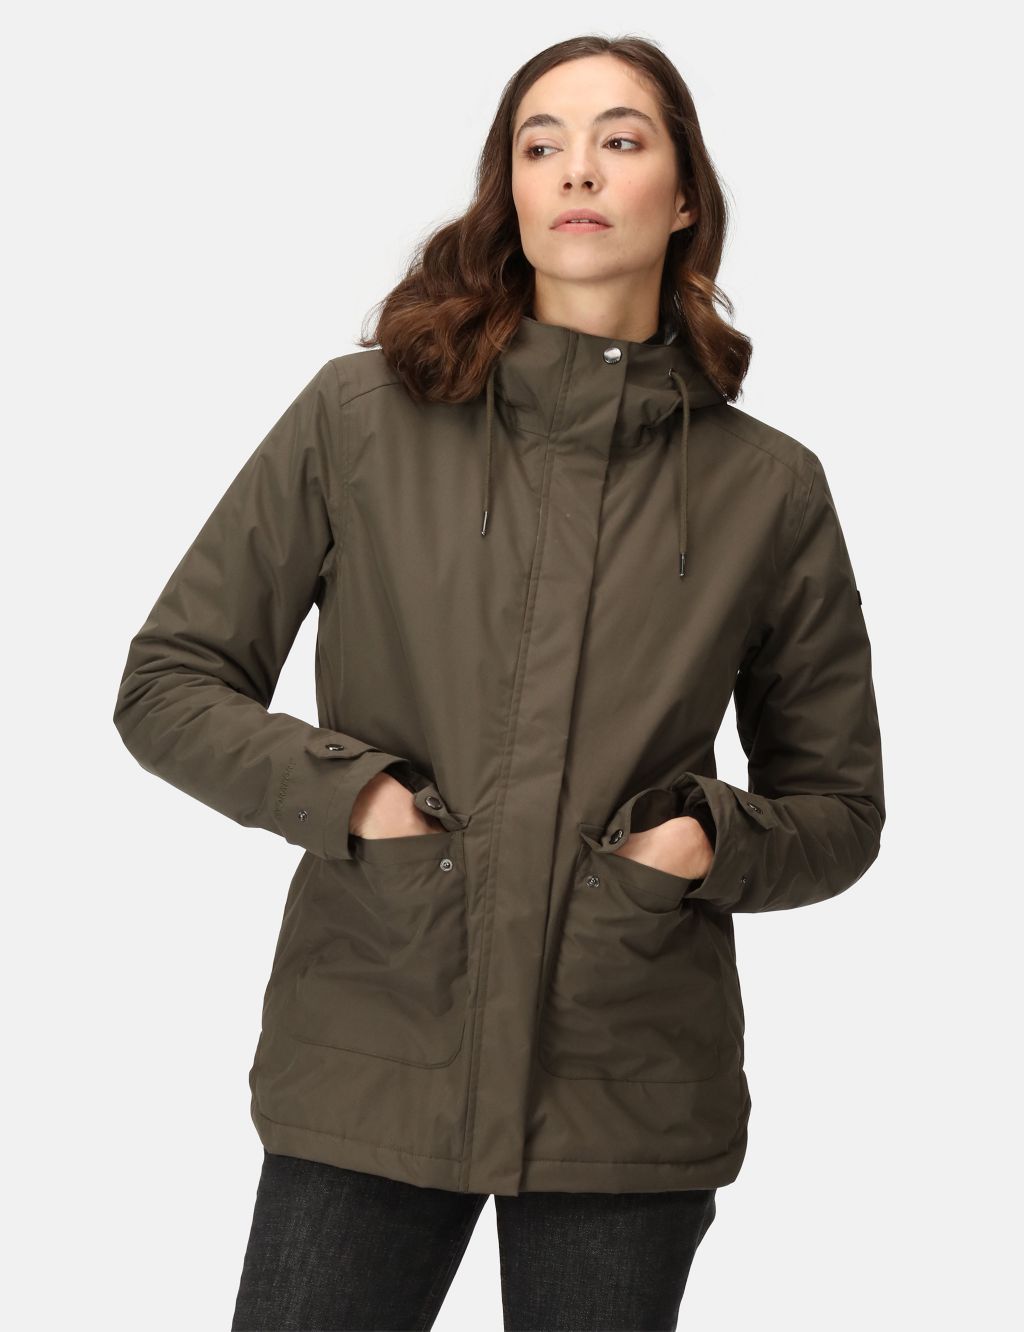 Broadia Waterproof Hooded Raincoat image 6